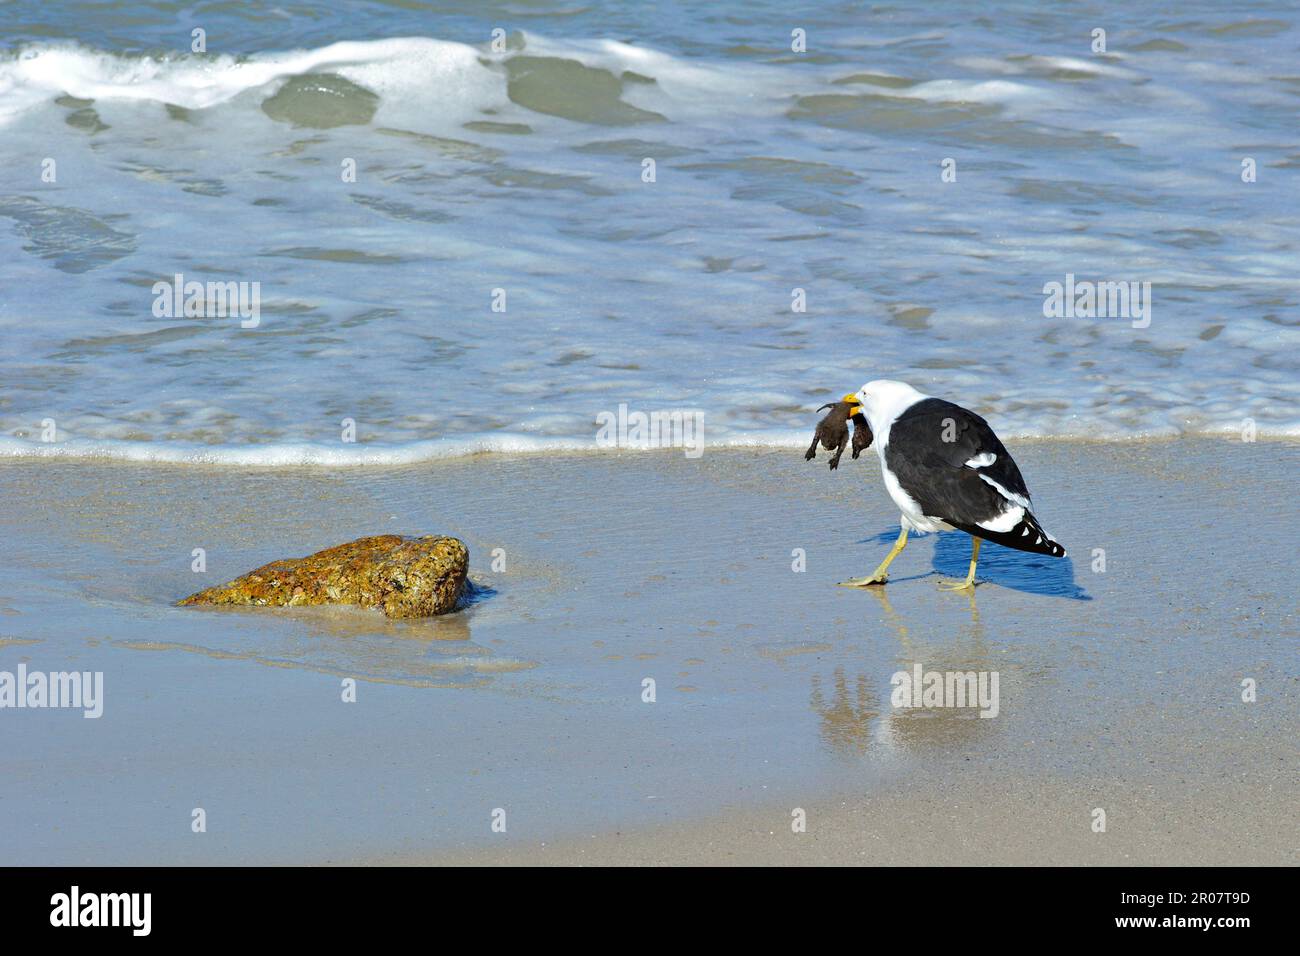 La cape adulte (Larus dominicanus vetula), se nourrissant sur la poussette du Penguin Gentoo (Sphensicus demersus), debout sur la plage, Simonstown Banque D'Images